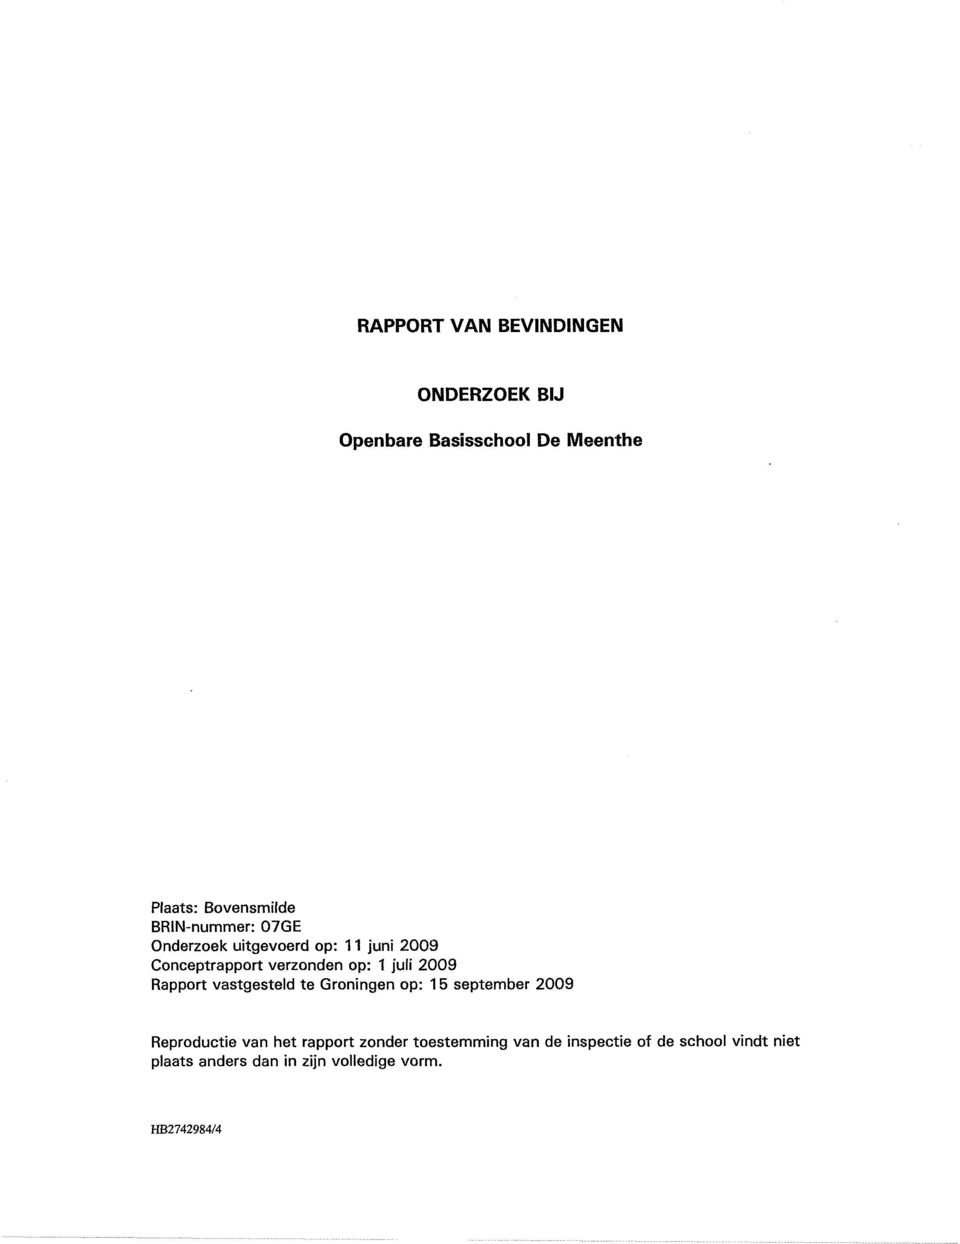 2009 Rapport vastgesteld te Groningen op: 15 september 2009 Reproductie het rapport zonder